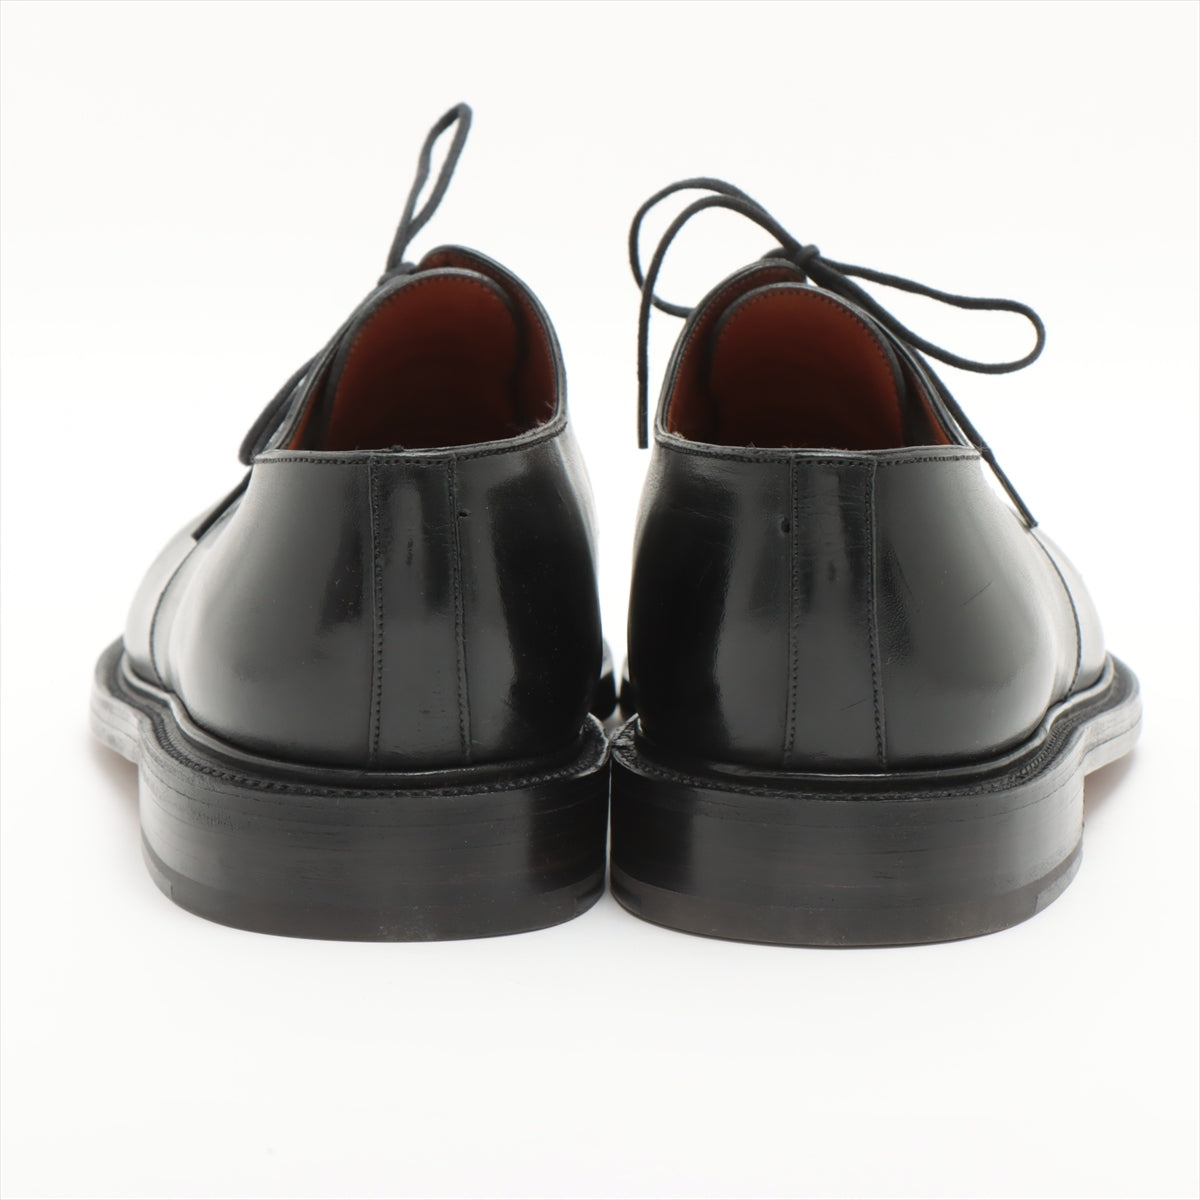 J. M. Weston Leather Dress shoes 10 1/2E Men's Black Spilit Toe Classic Derby